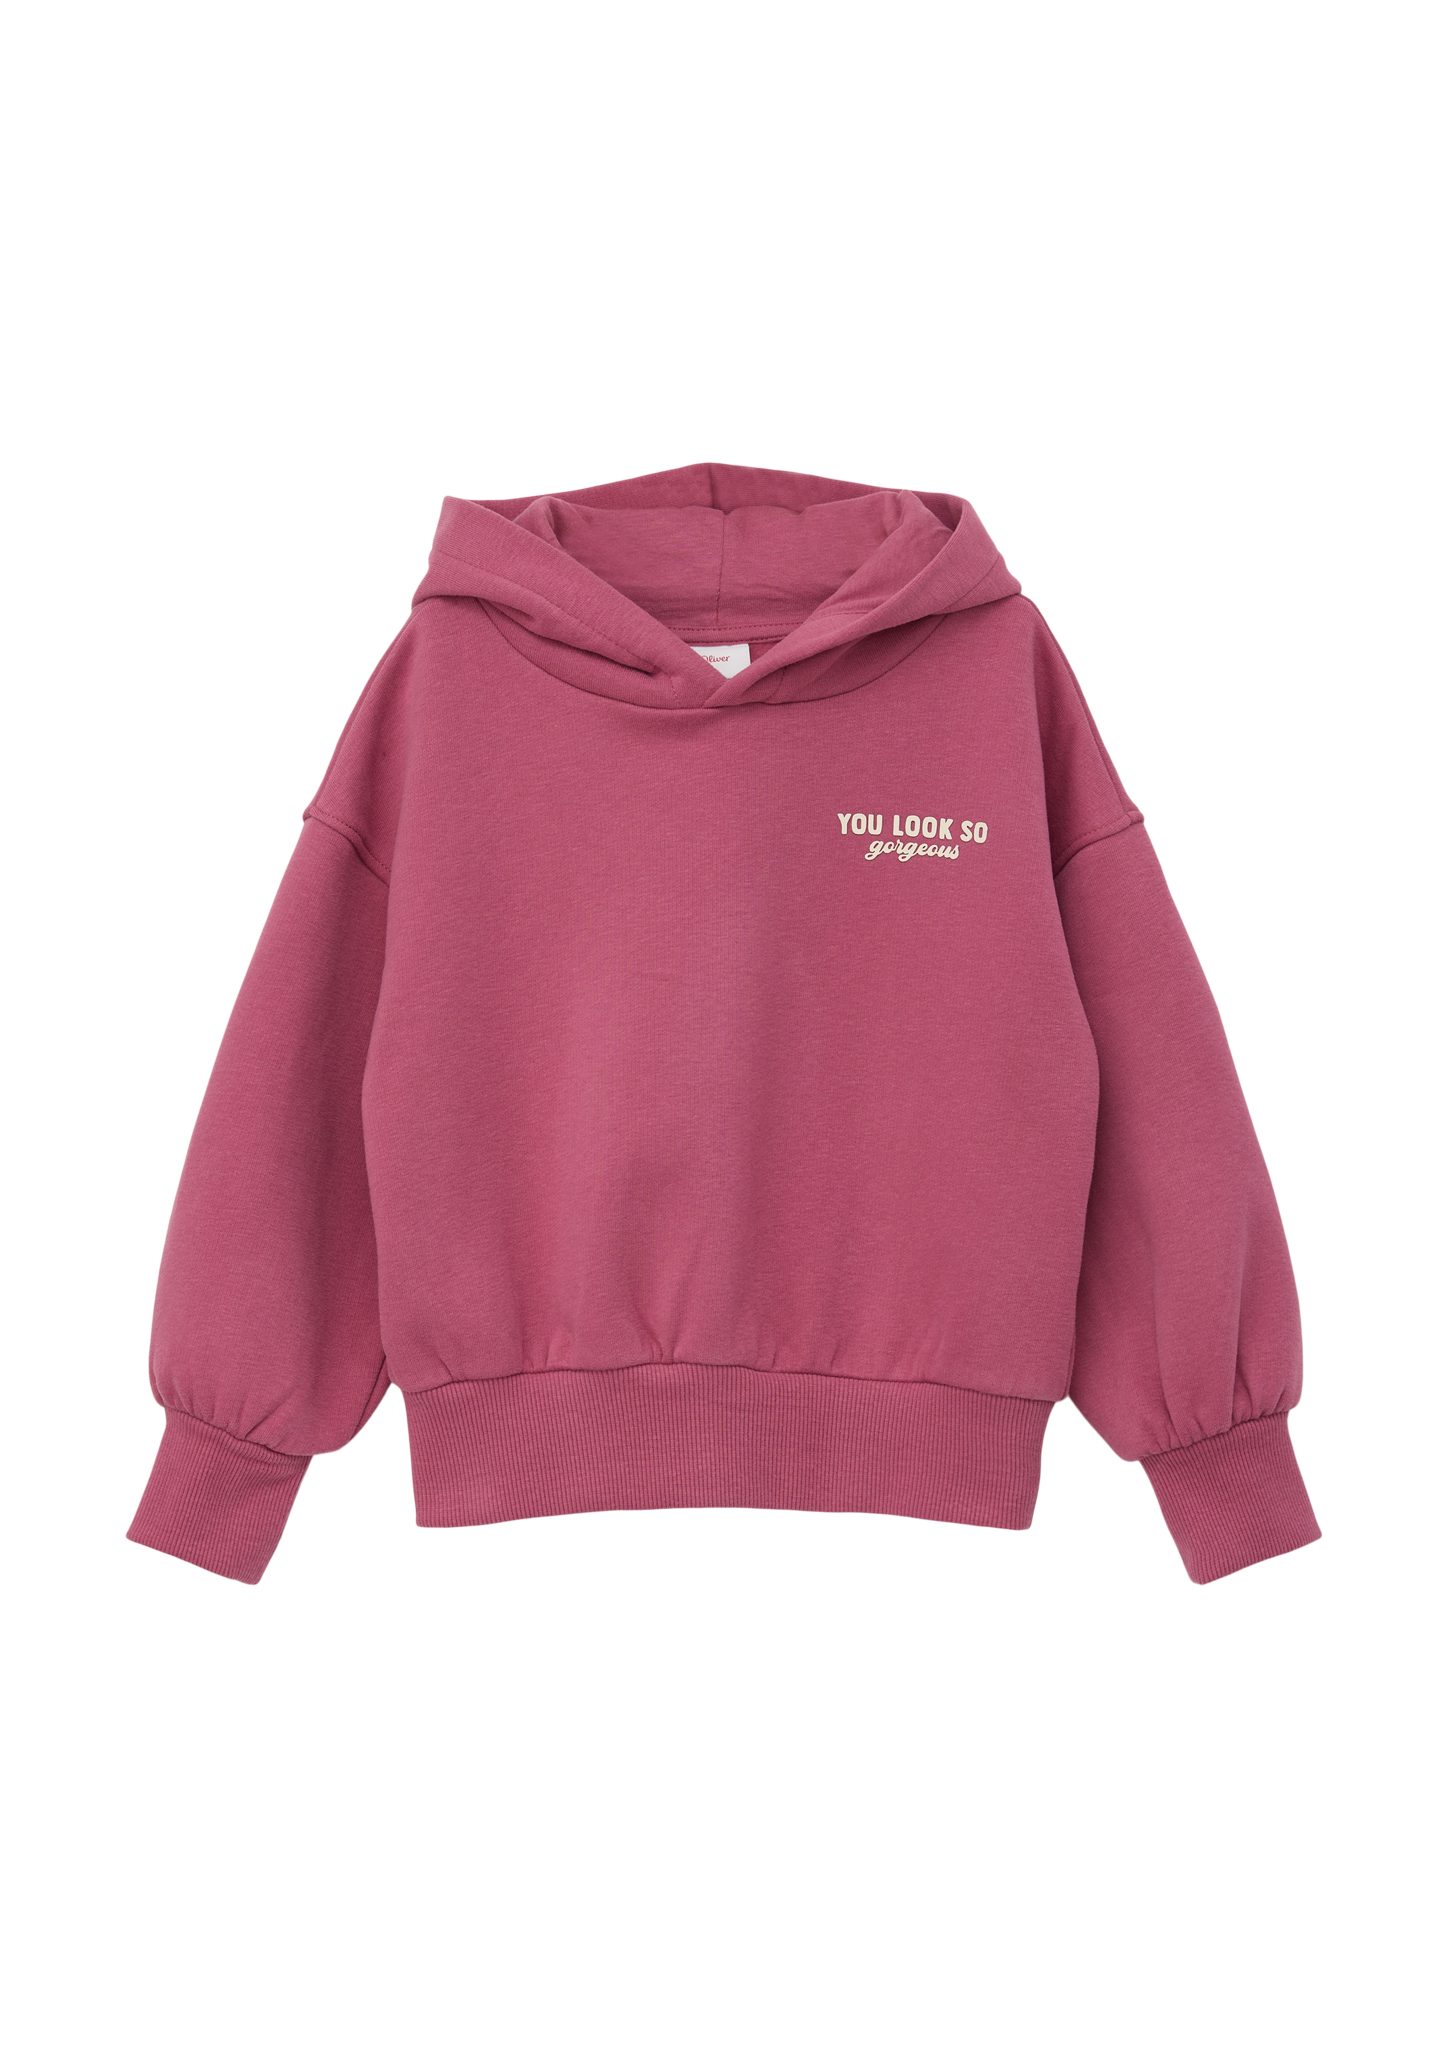 Innenseite Sweatshirt s.Oliver mit Kapuzensweater weicher pink